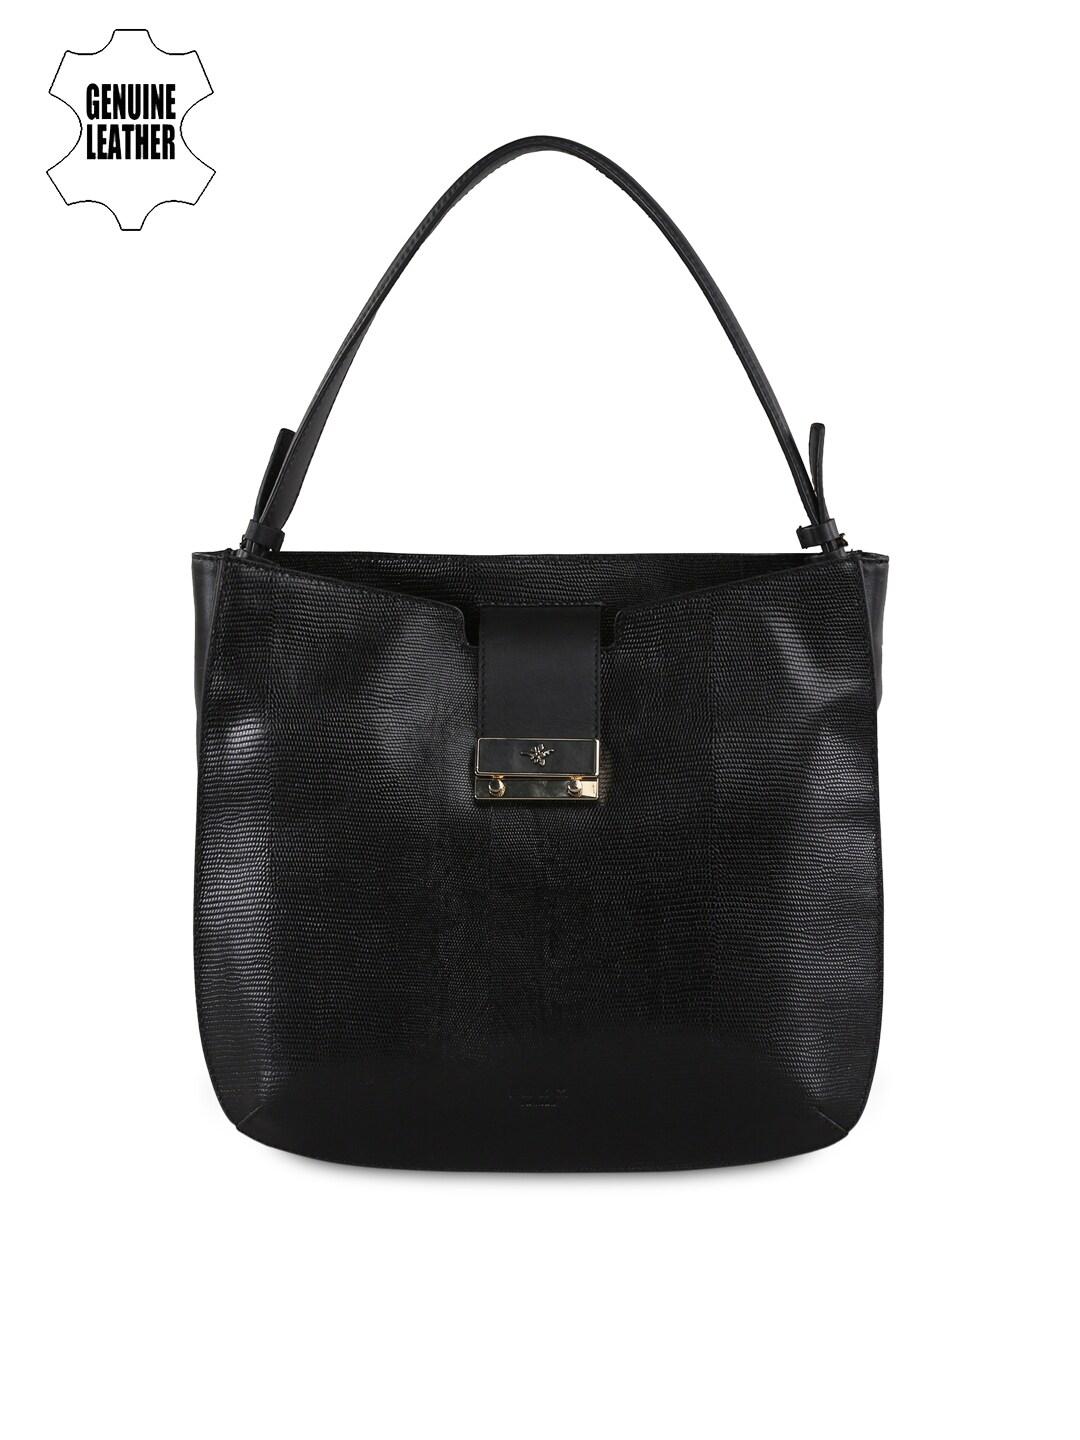 ILEX Black Leather Shoulder Bag